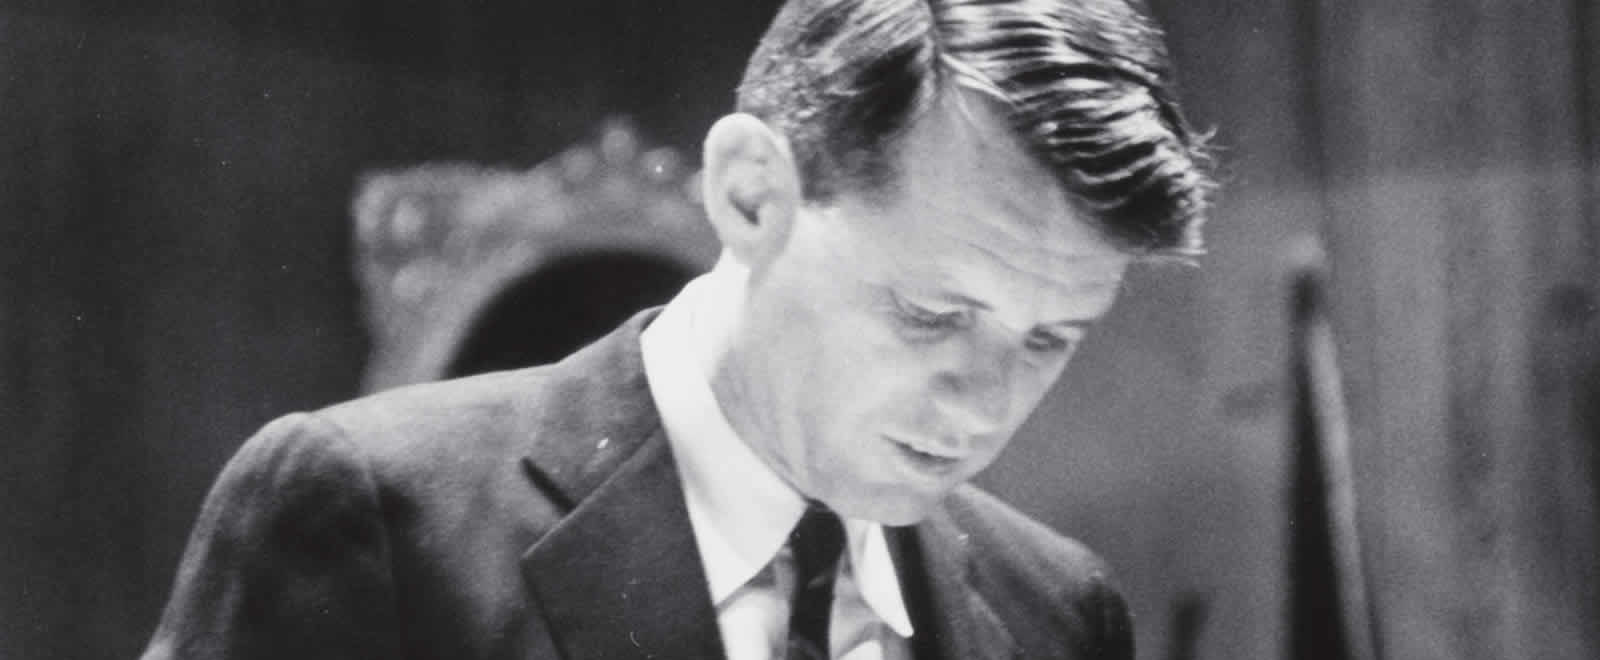 Robert Kennedy,1961